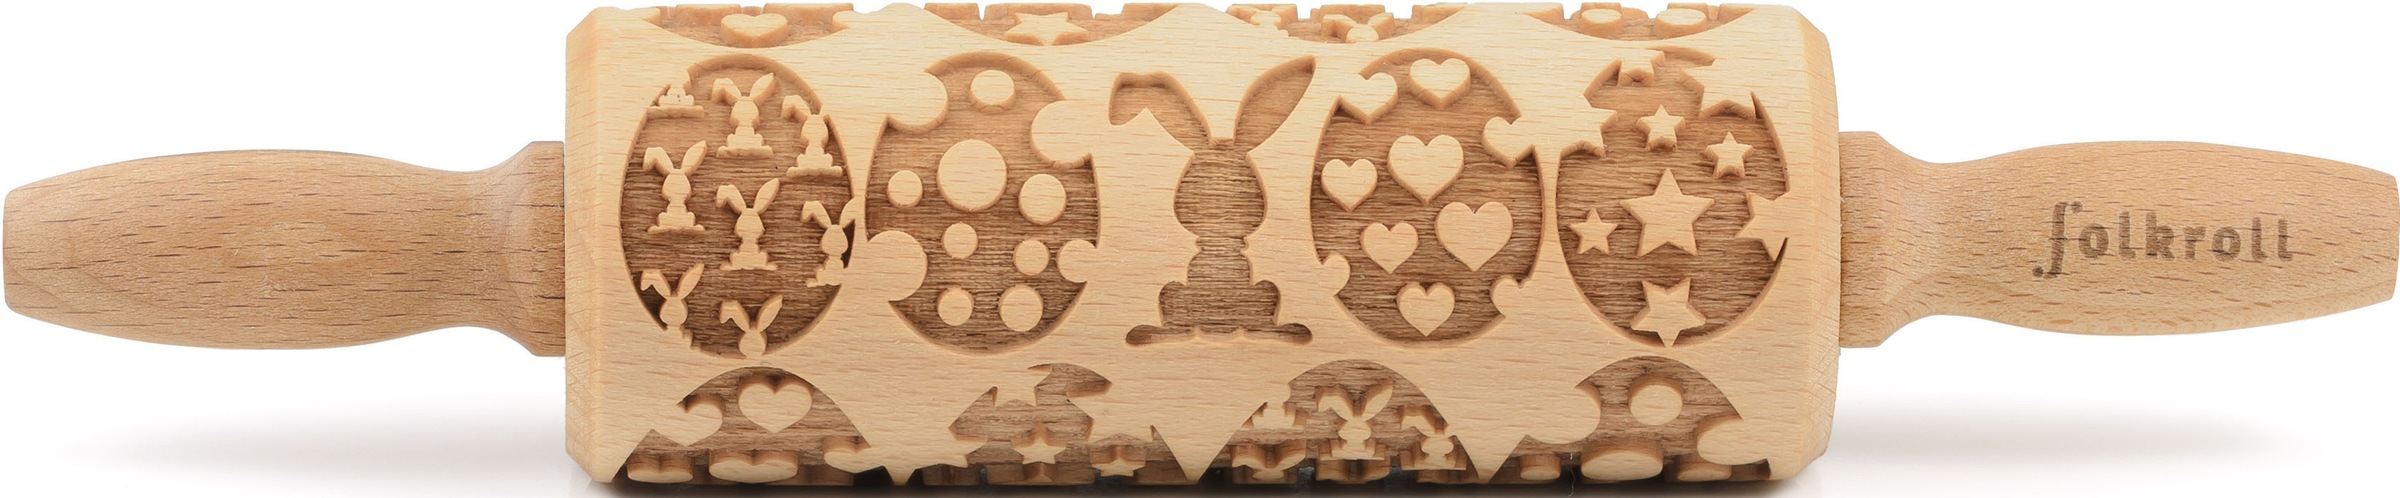 folkroll Teigroller »3D-Motiv-Teigrolle«, Happy Easter